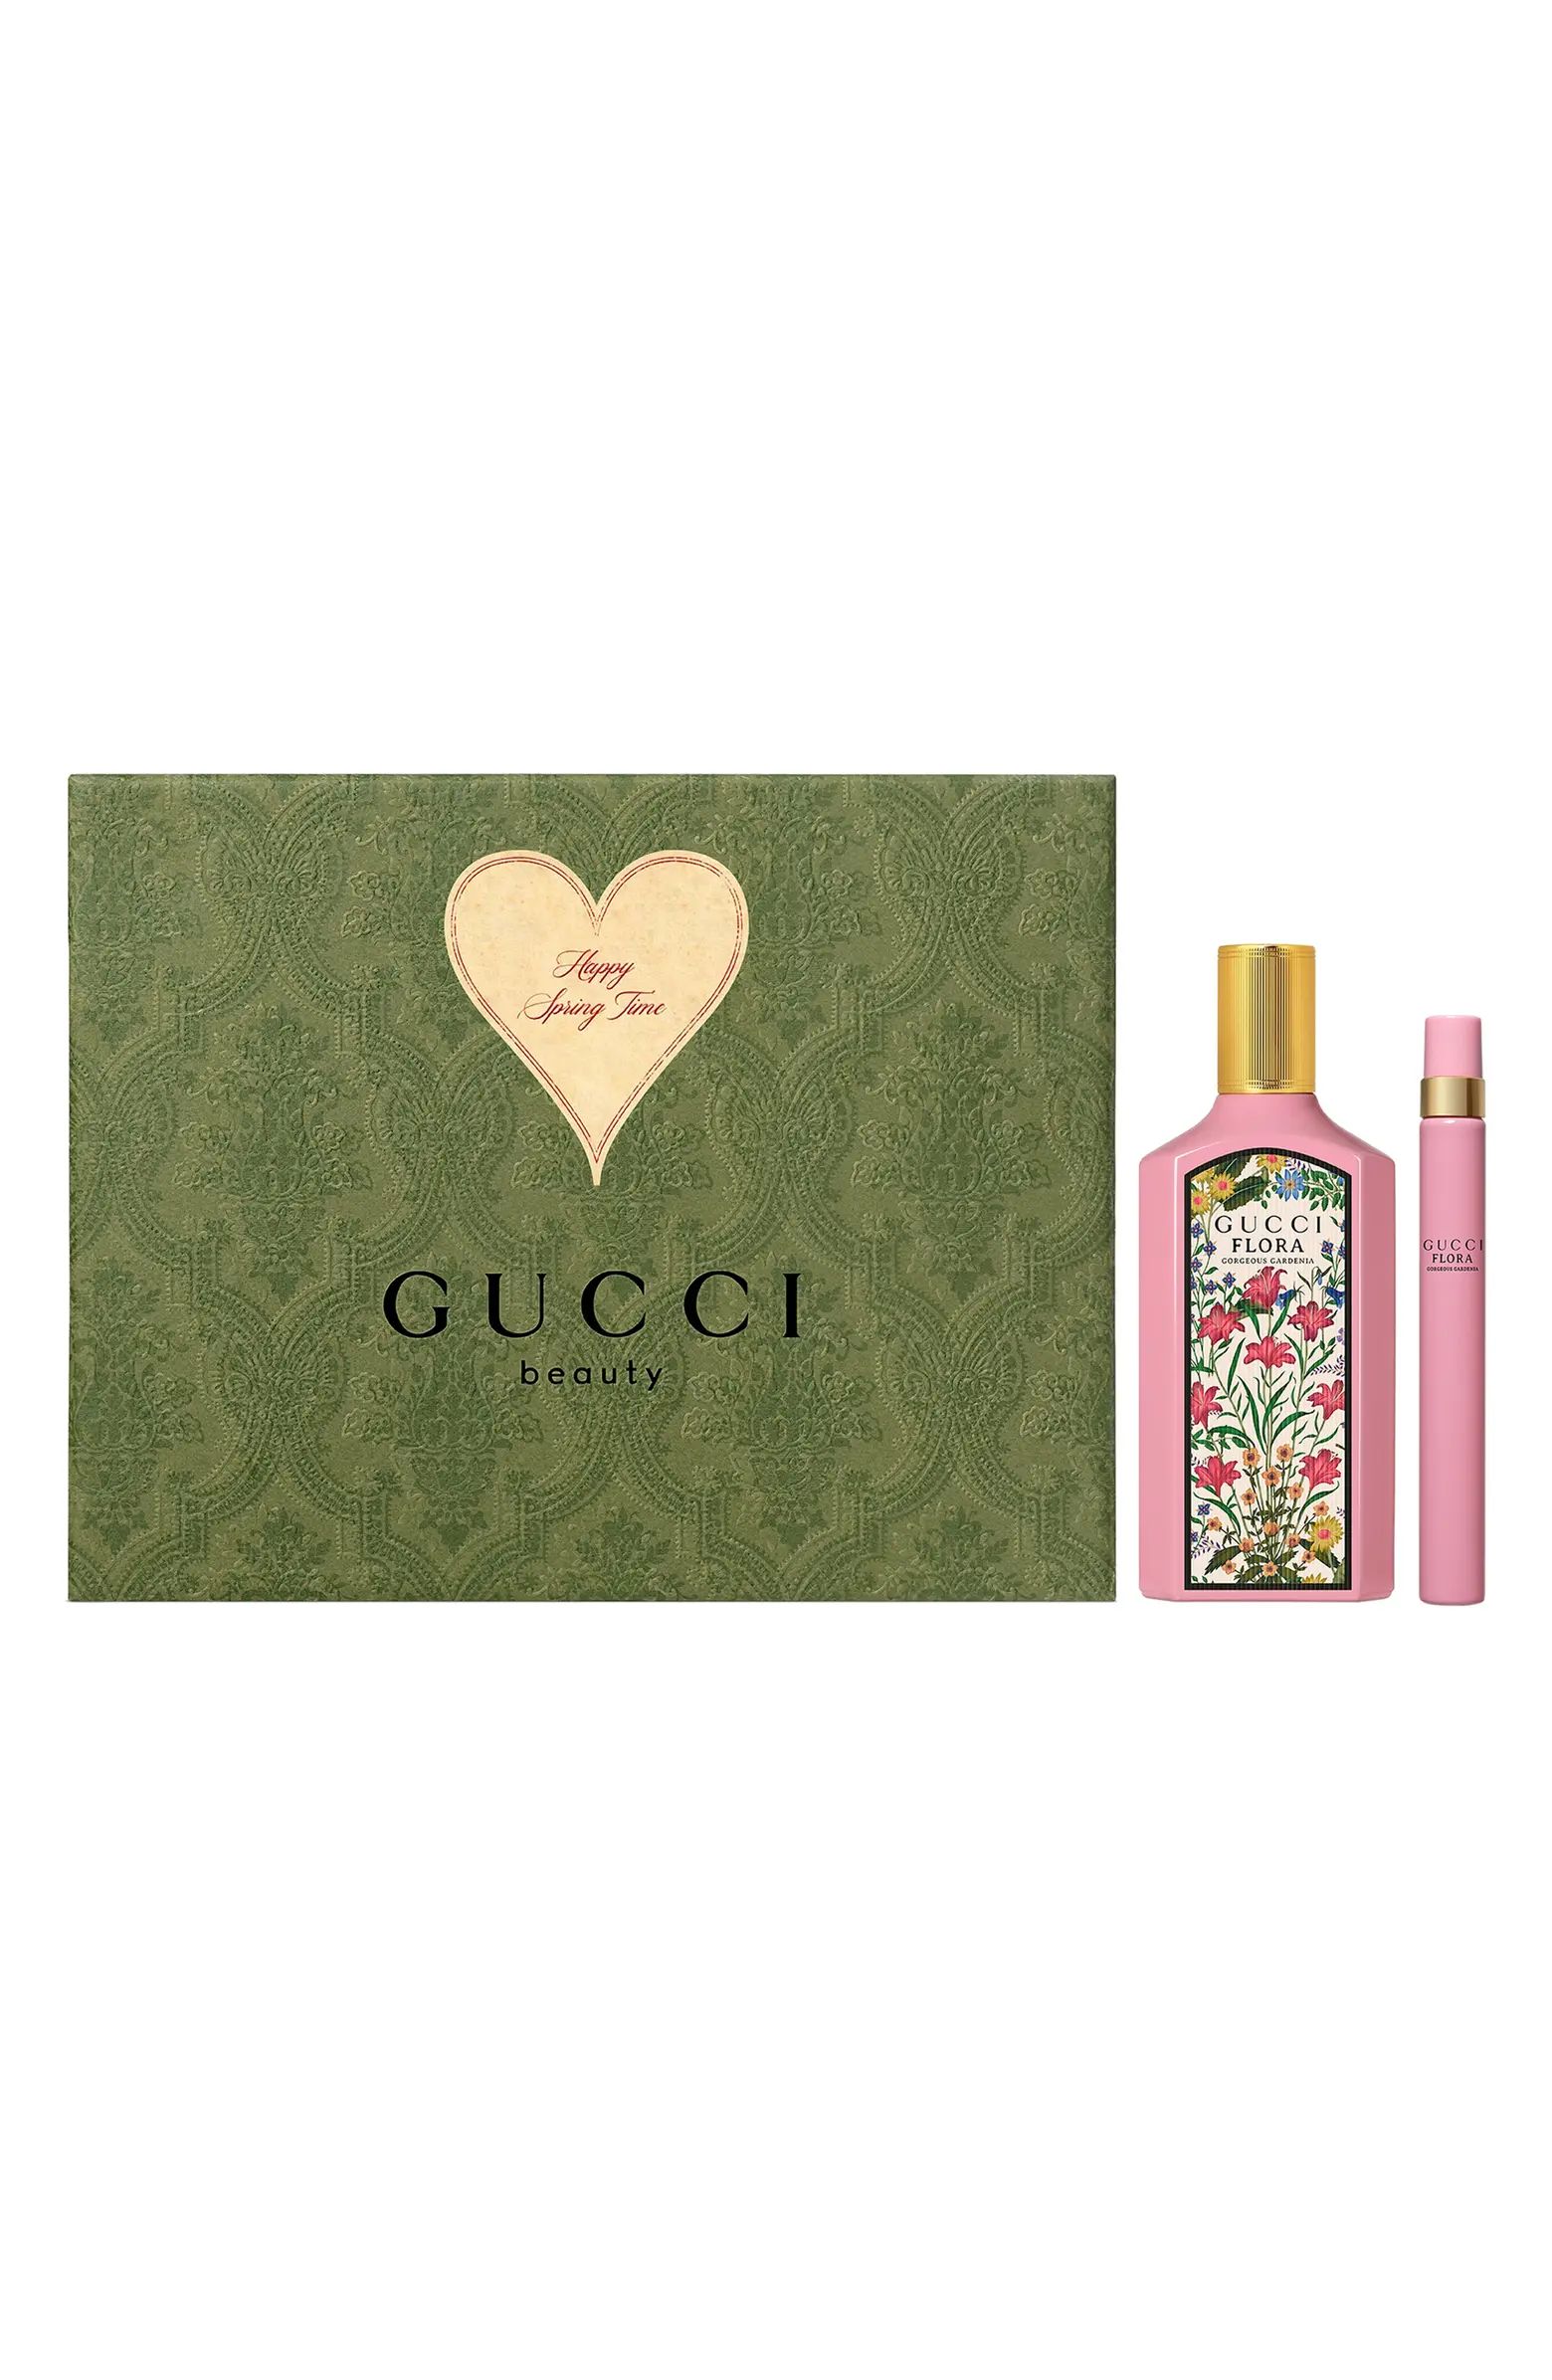 Gucci Flora Gorgeous Gardenia Eau de Parfum Gift Set USD $206 Value | Nordstrom | Nordstrom